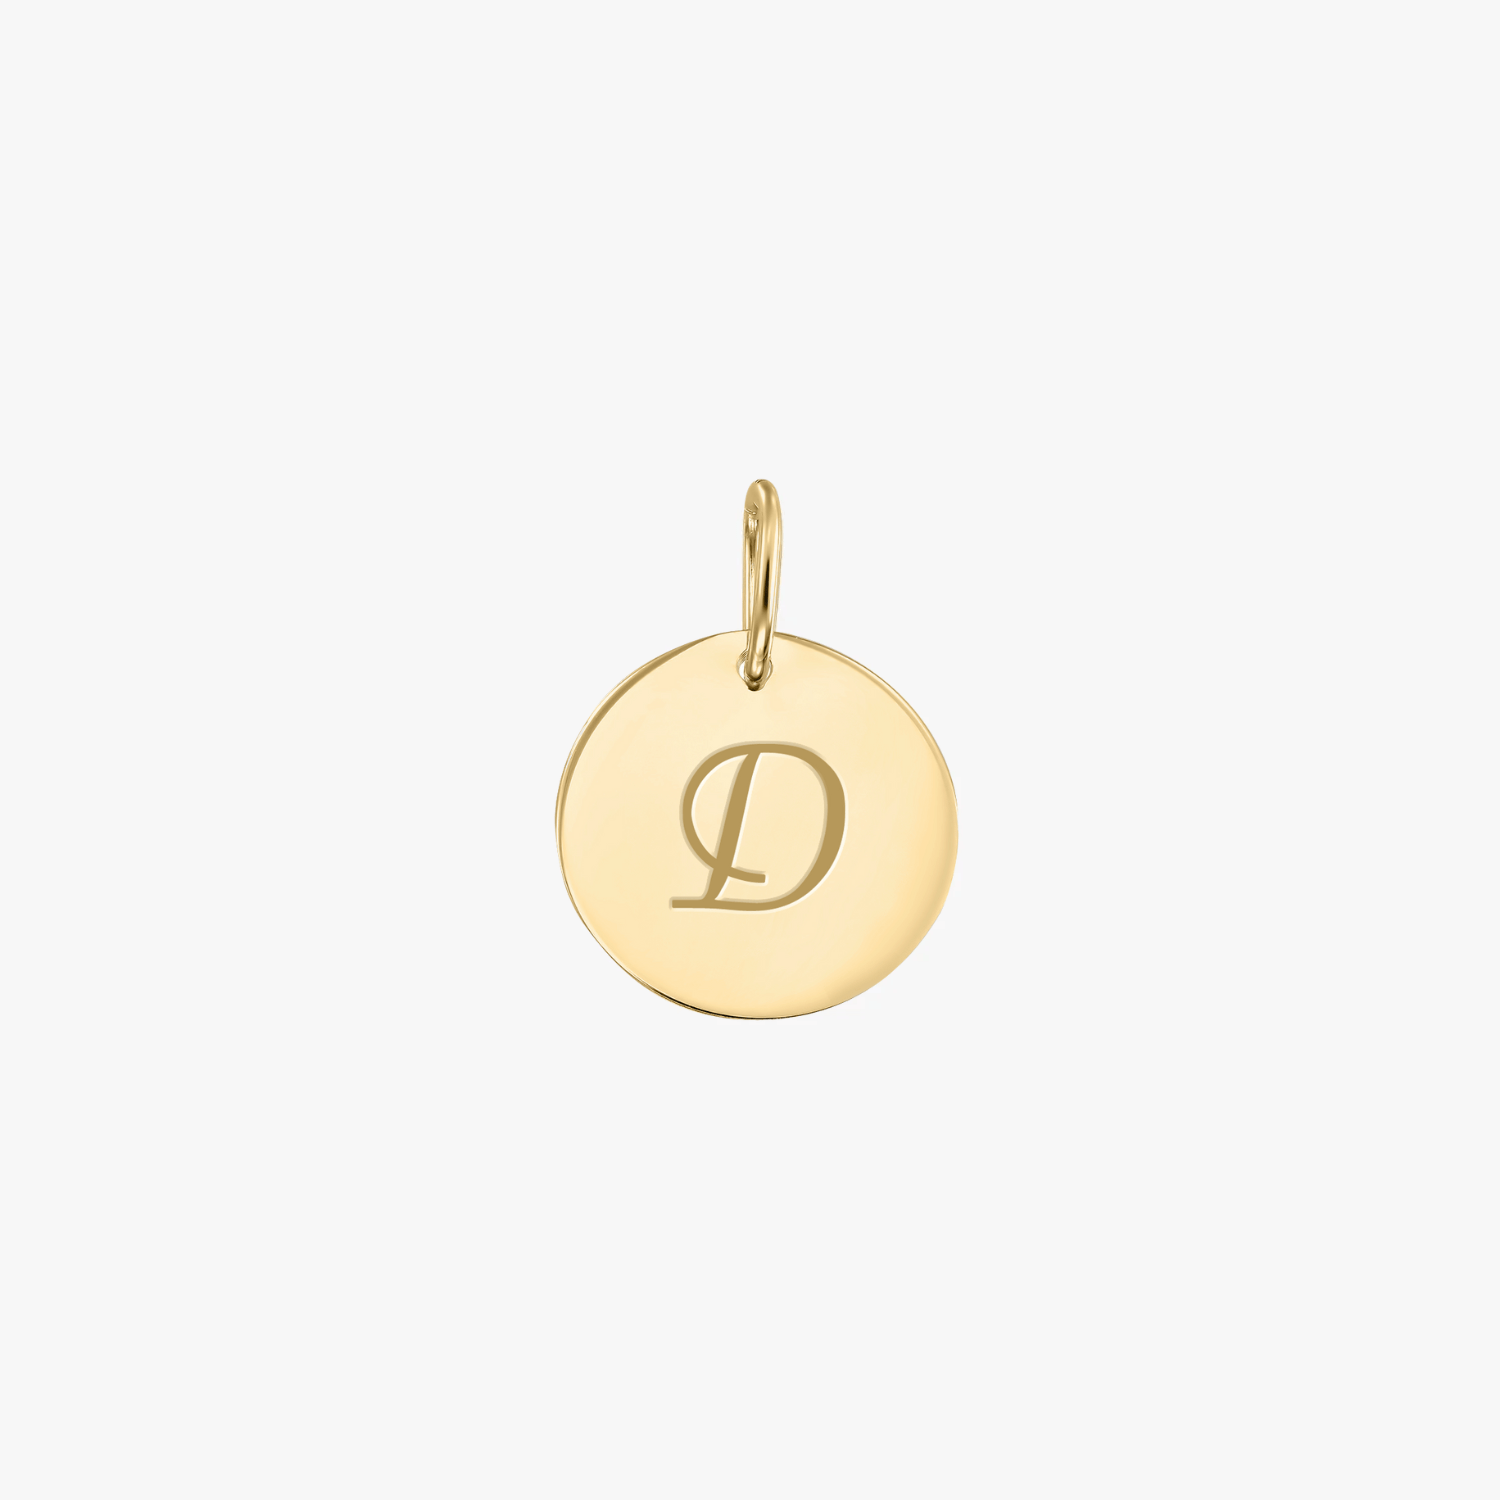 Golden A silver pendant